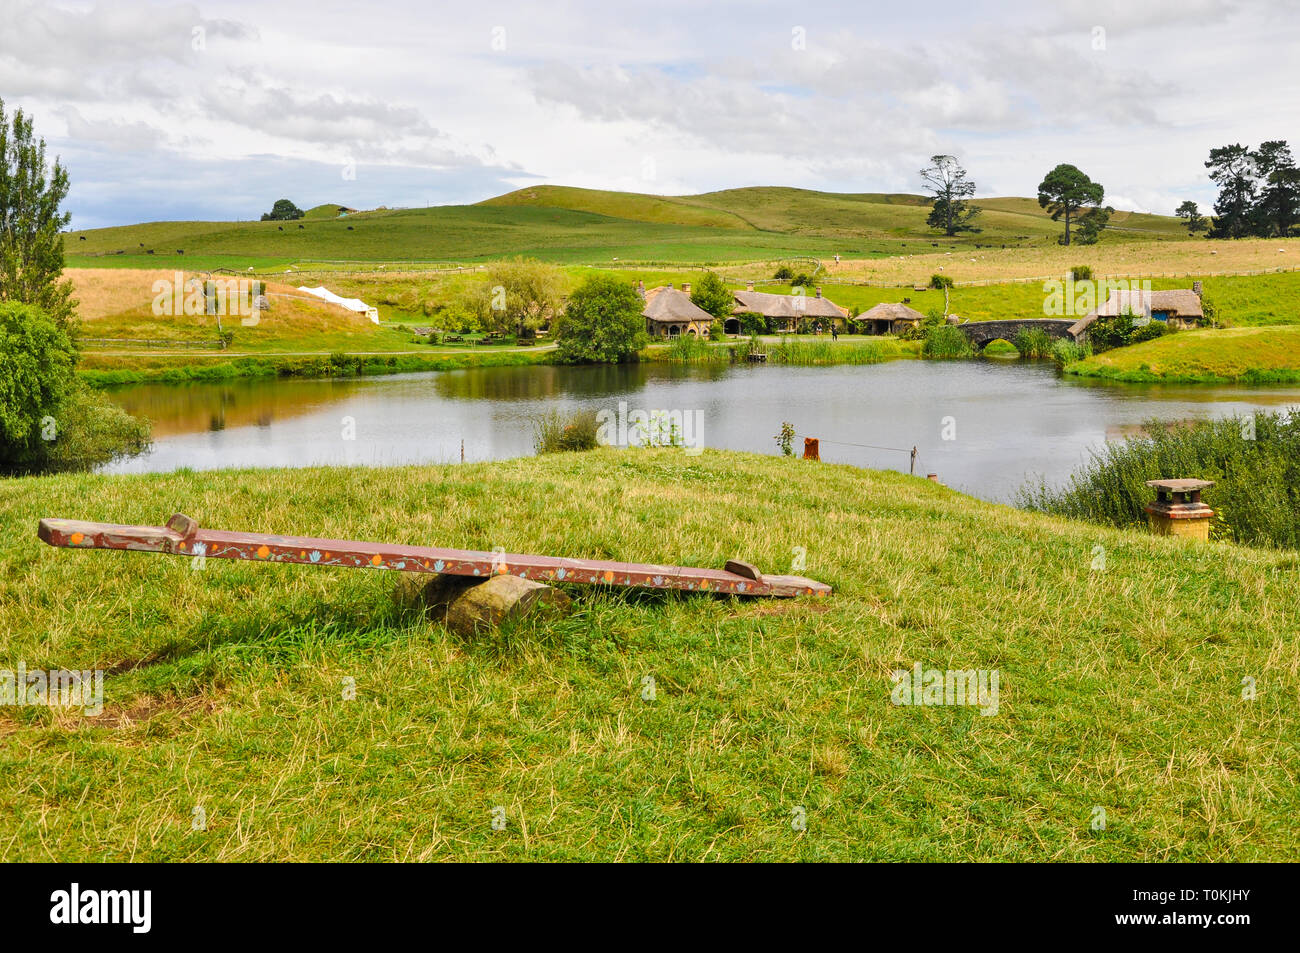 Hobbiton Movie set - Location per il Signore degli Anelli e Lo Hobbit film. Altalena, lago, mulino. attrazione turistica nella regione di Waikato in Nuova Zelanda Foto Stock